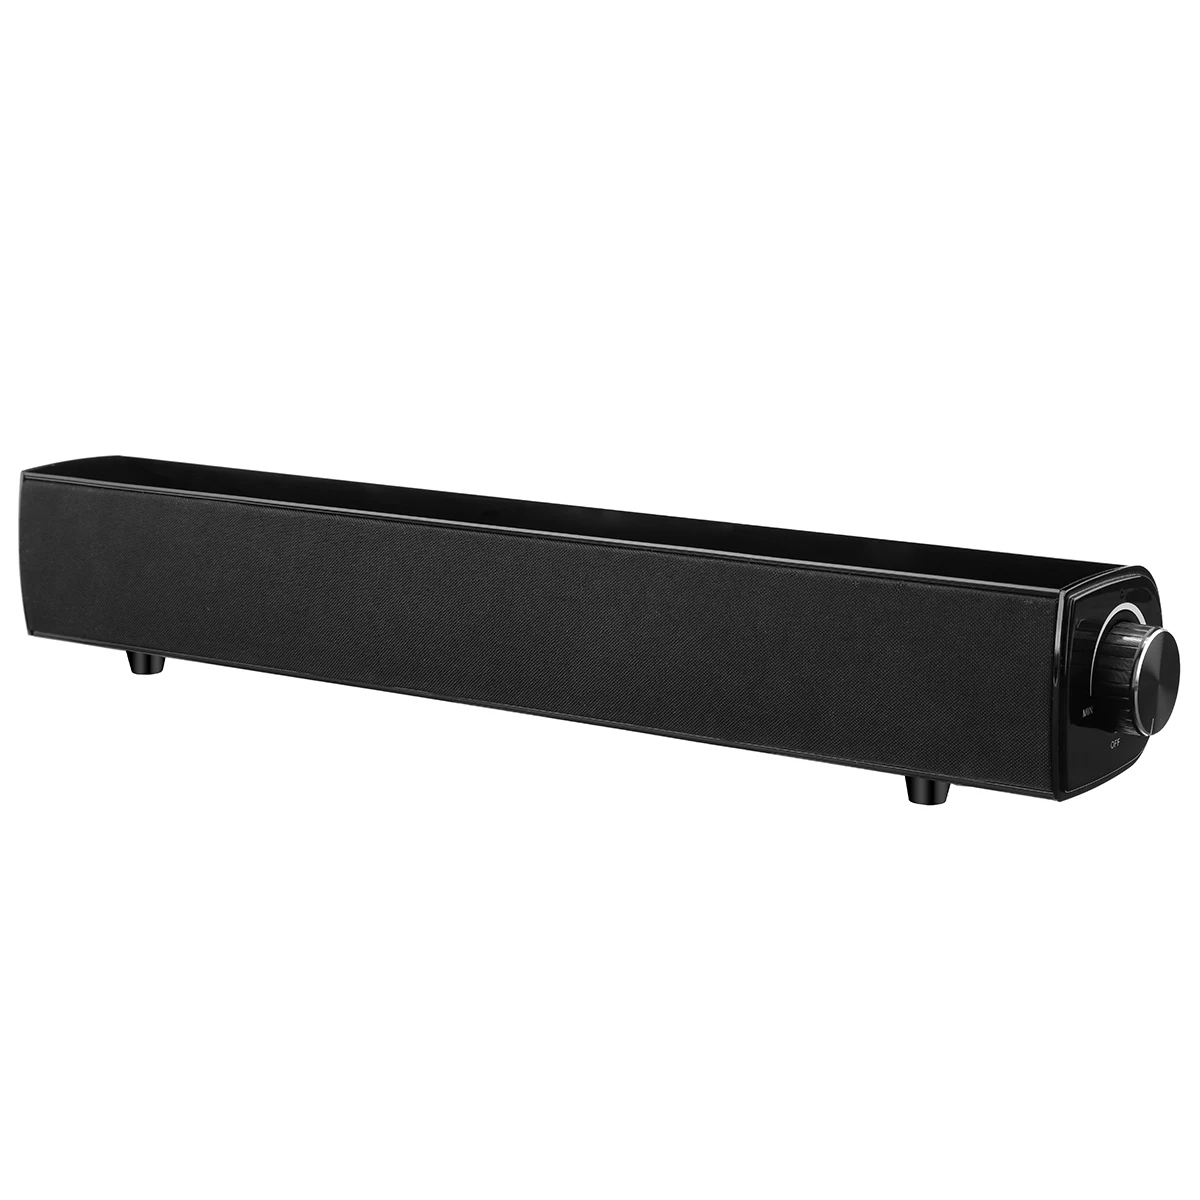 20 Вт bluetooth Саундбар динамик 4000 мАч беспроводной бас HiFi сабвуфер ТВ домашний кинотеатр громкий динамик с микрофоном USB AUX RCA кабель - Цвет: Черный